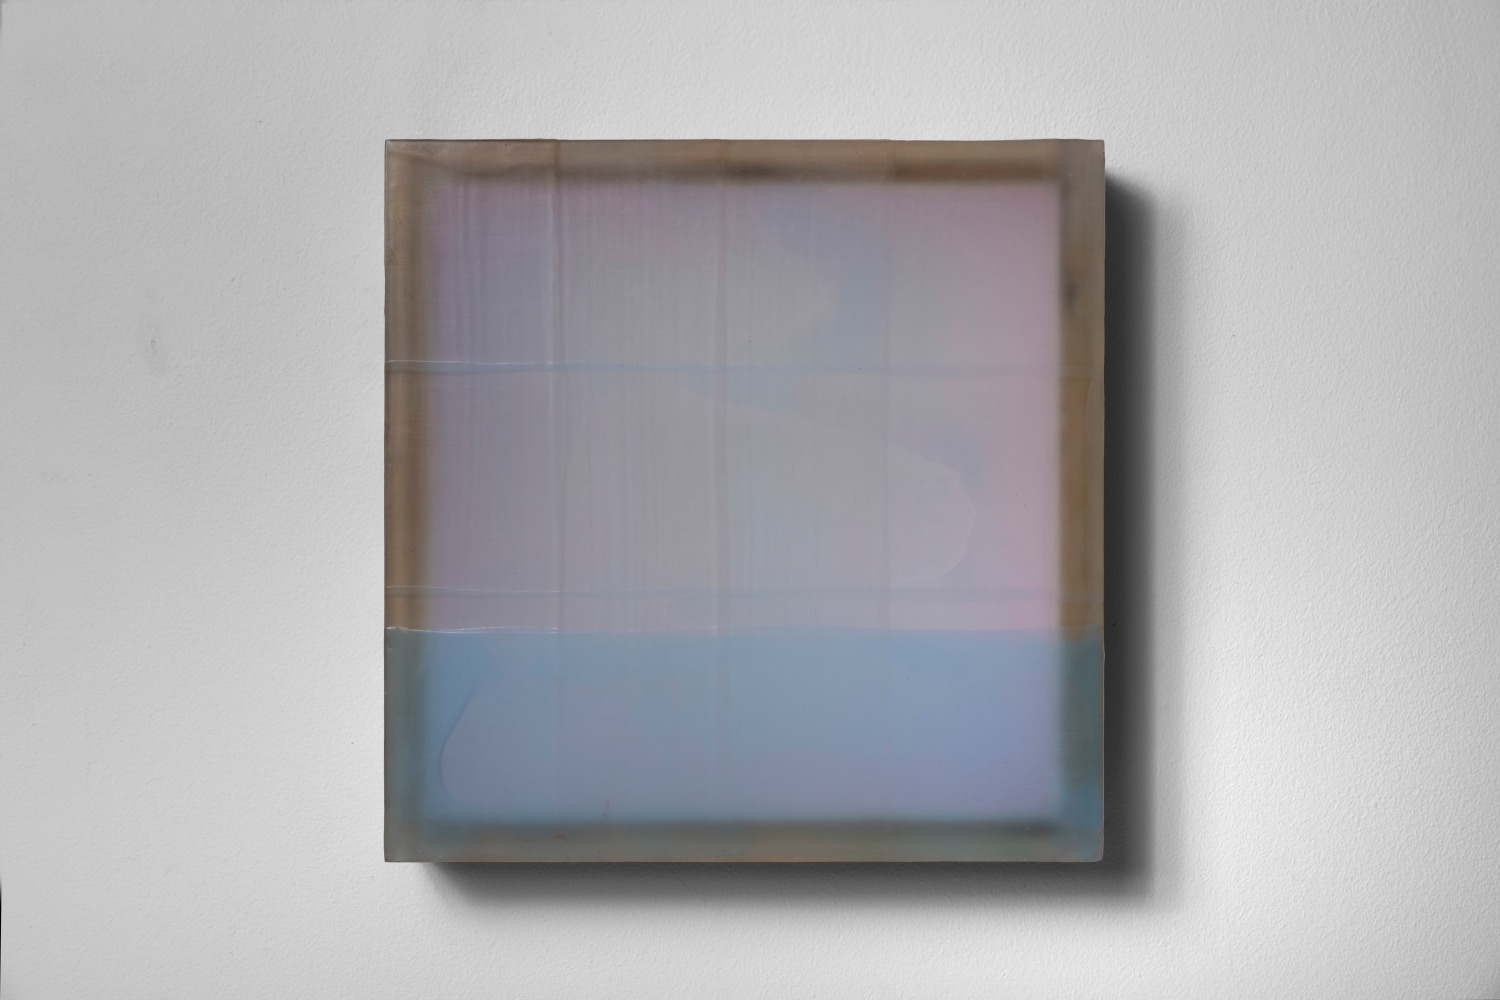 Non-Specific Pacific, 2003, Plexiglas, pigment, beeswax, acrylic 11 1/2 x 11 1/2 x 2 5/8 inches;  29.21 x 29.21 x 6.6802 centimeters LSFA# 13737